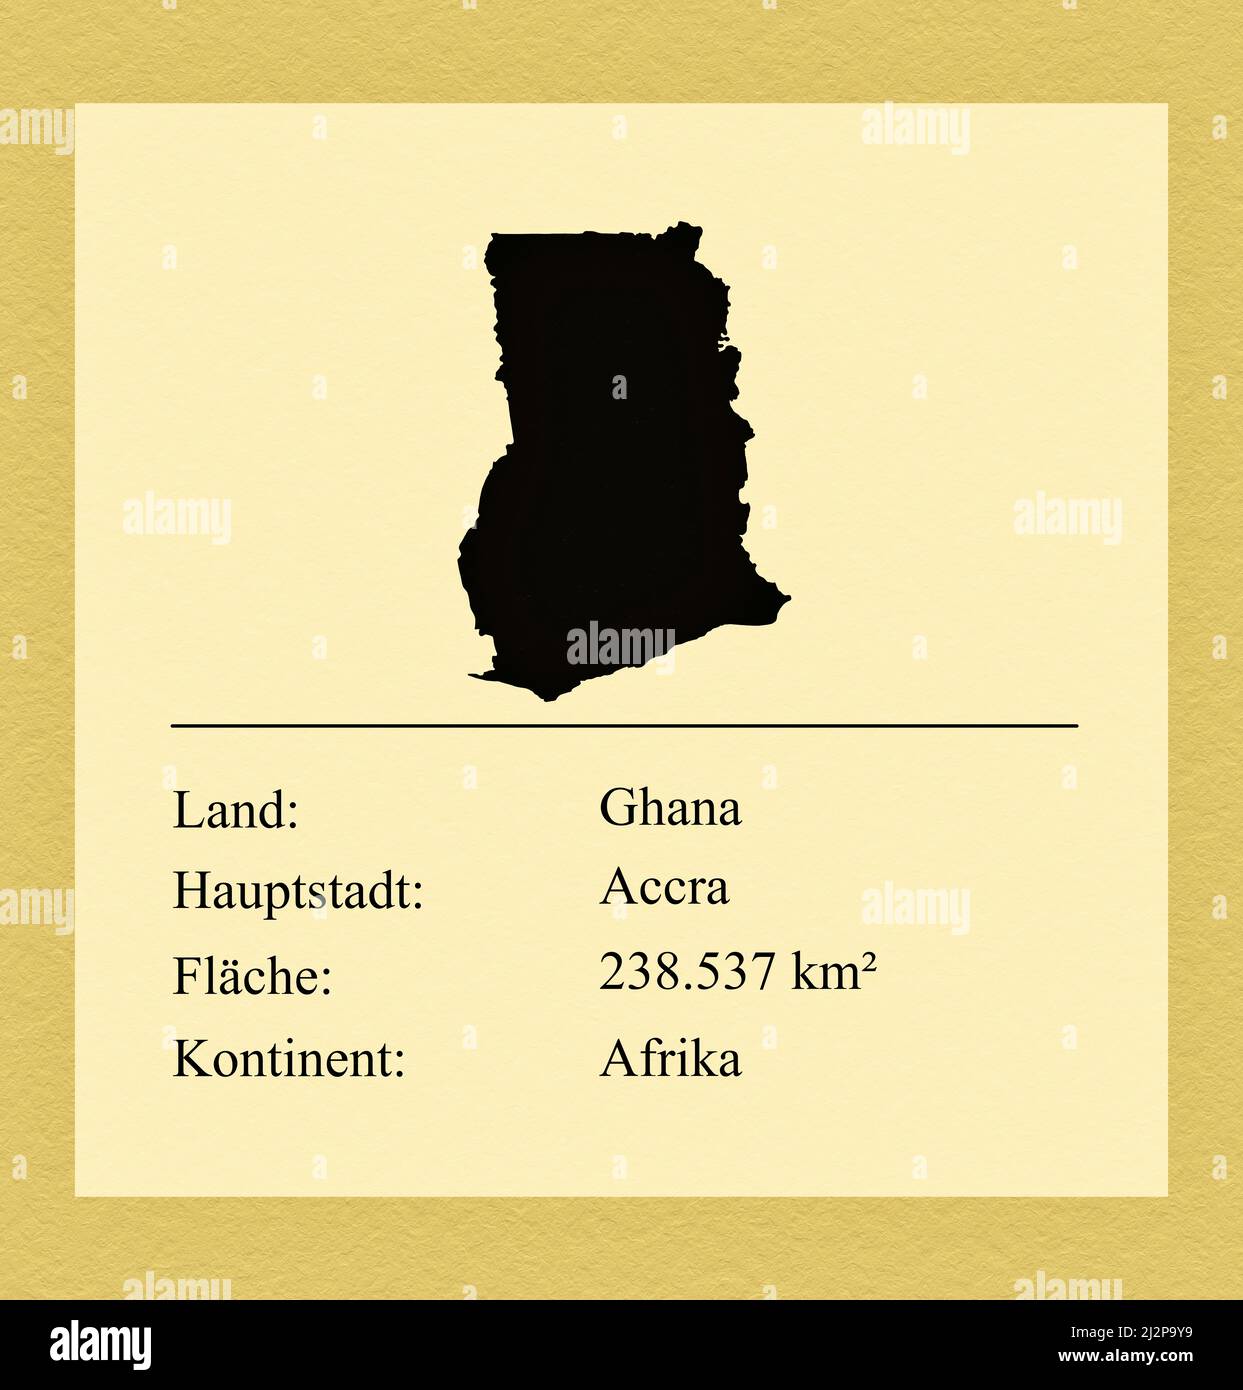 Umrisse des Landes Ghana, darunter ein kleiner Steckbrief mit Ländernamen, Hauptstadt, Fläche und Kontinent Foto de stock